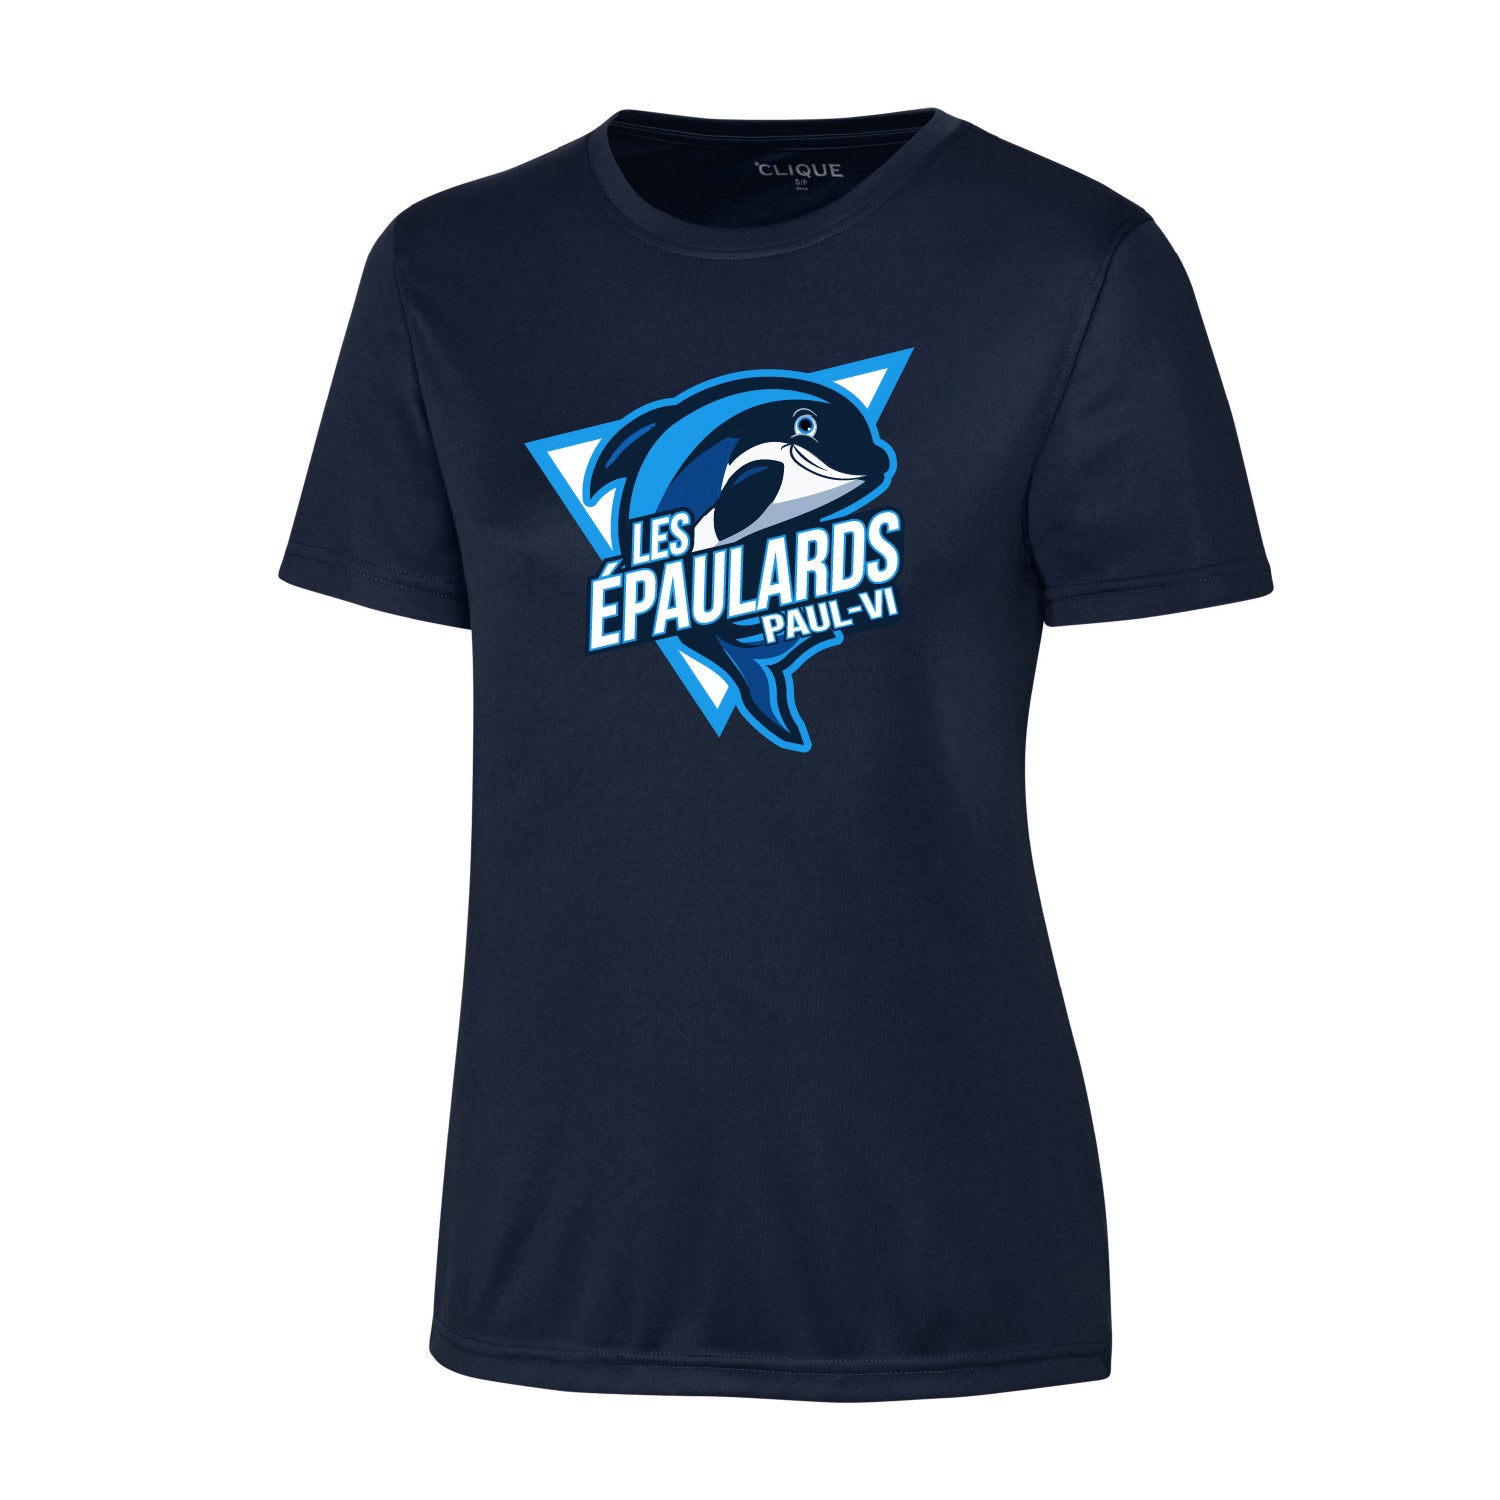 T-shirt Technique marine - Les Épaulards - École Paul-VI